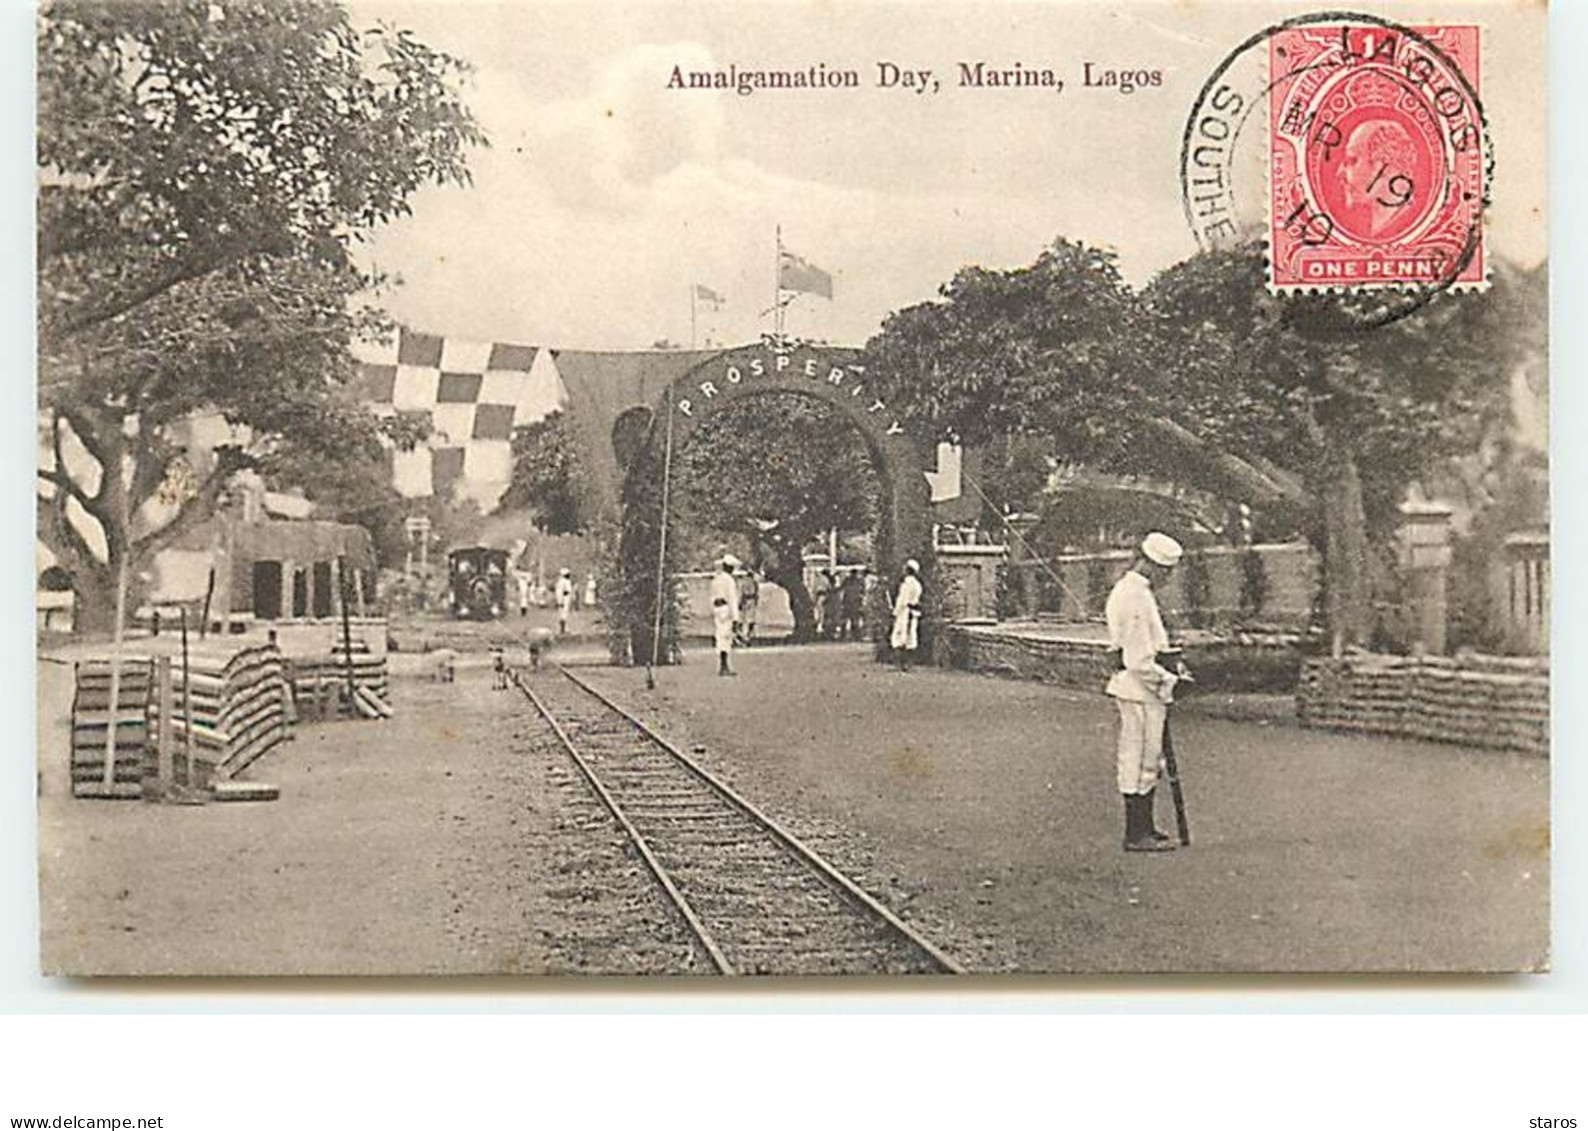 Amalgamation Day, Marina, Lagos - Nigeria